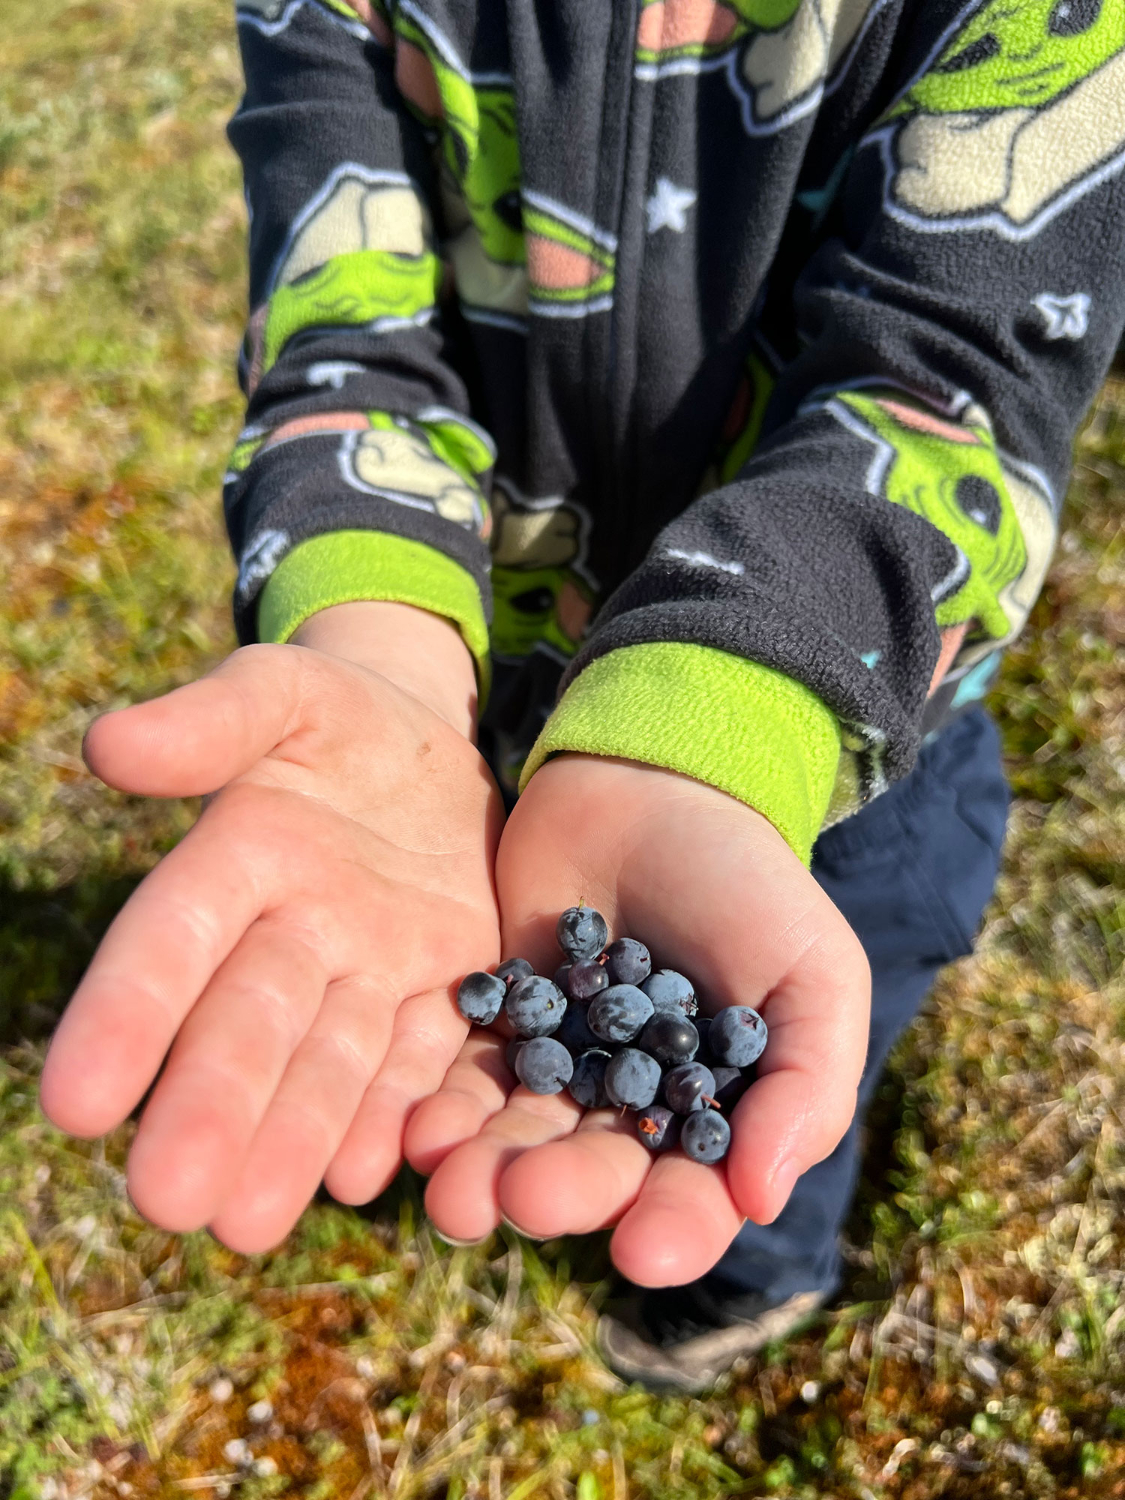 Blueberries and Salmonberries picked in Kavik, Alaska